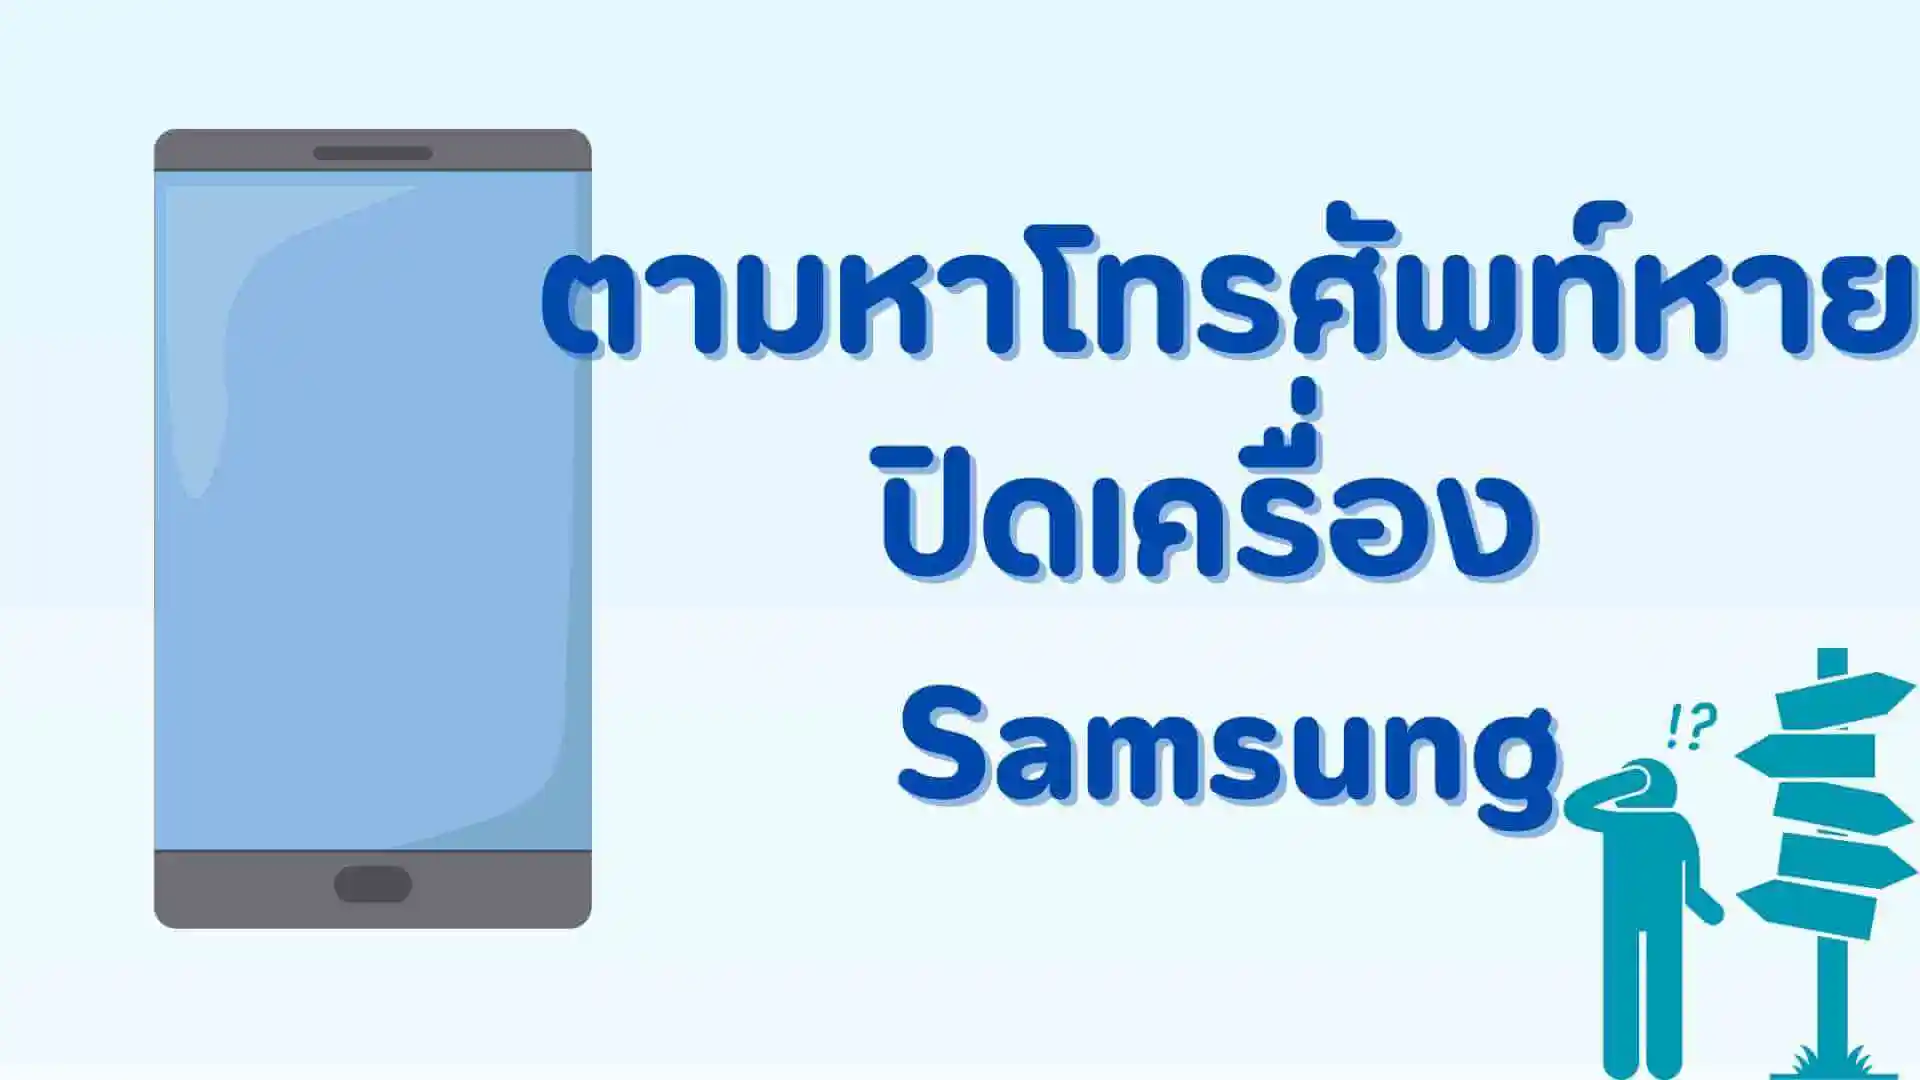 ขั้นตอนที่คุณควรรู้! การตามหาโทรศัพท์หายปิดเครื่อง Samsung